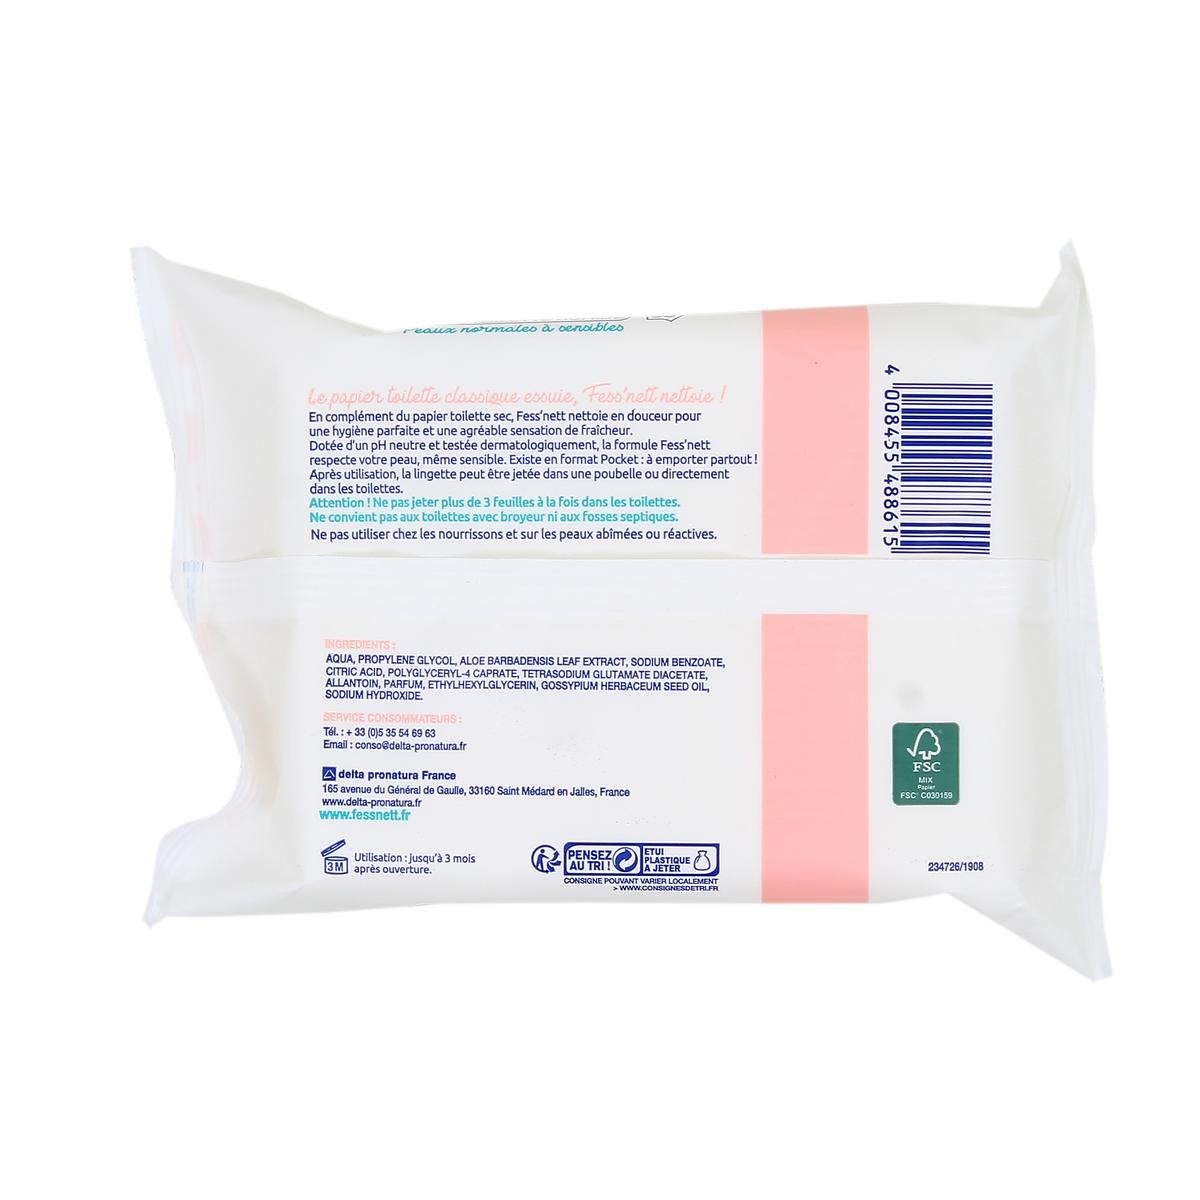 Fess Net Lingette Papier toilette humide fleur de coton peaux sensibles à  normales